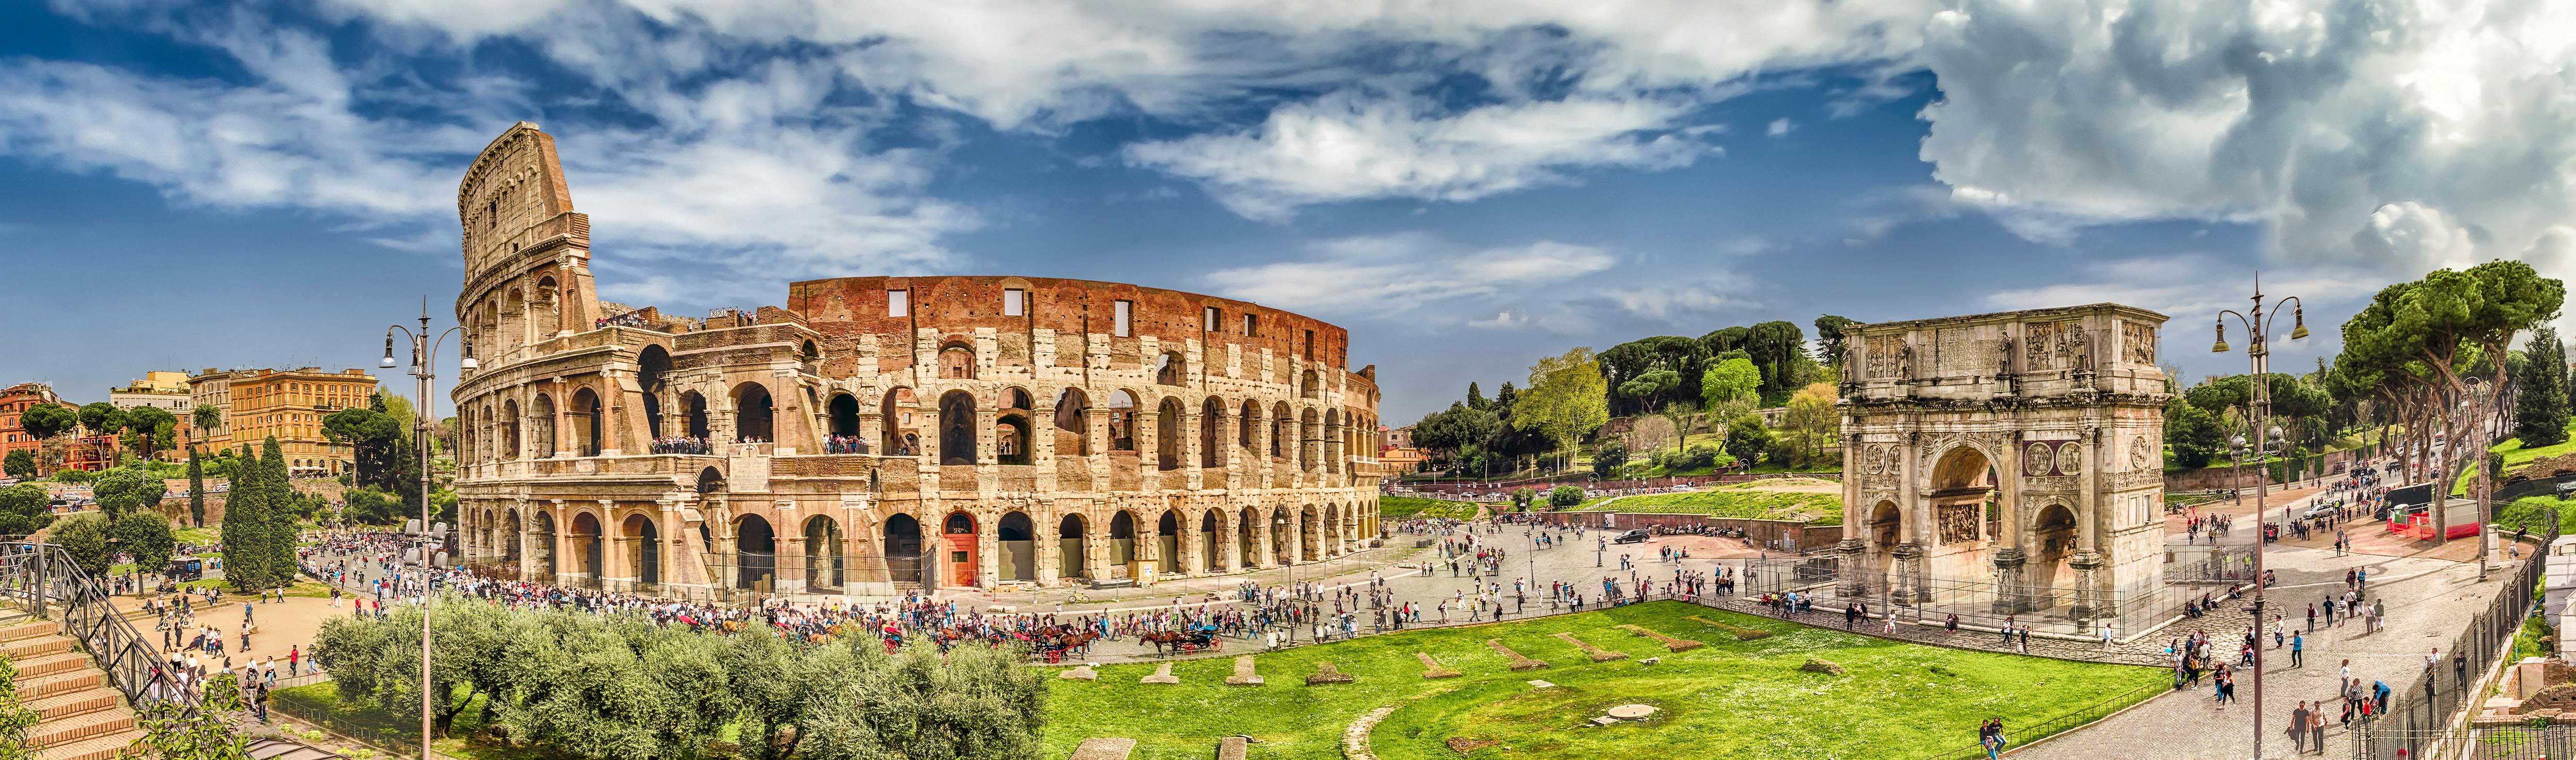 Sekretne życie gry eksploracyjnej i zwiedzania Rzymian